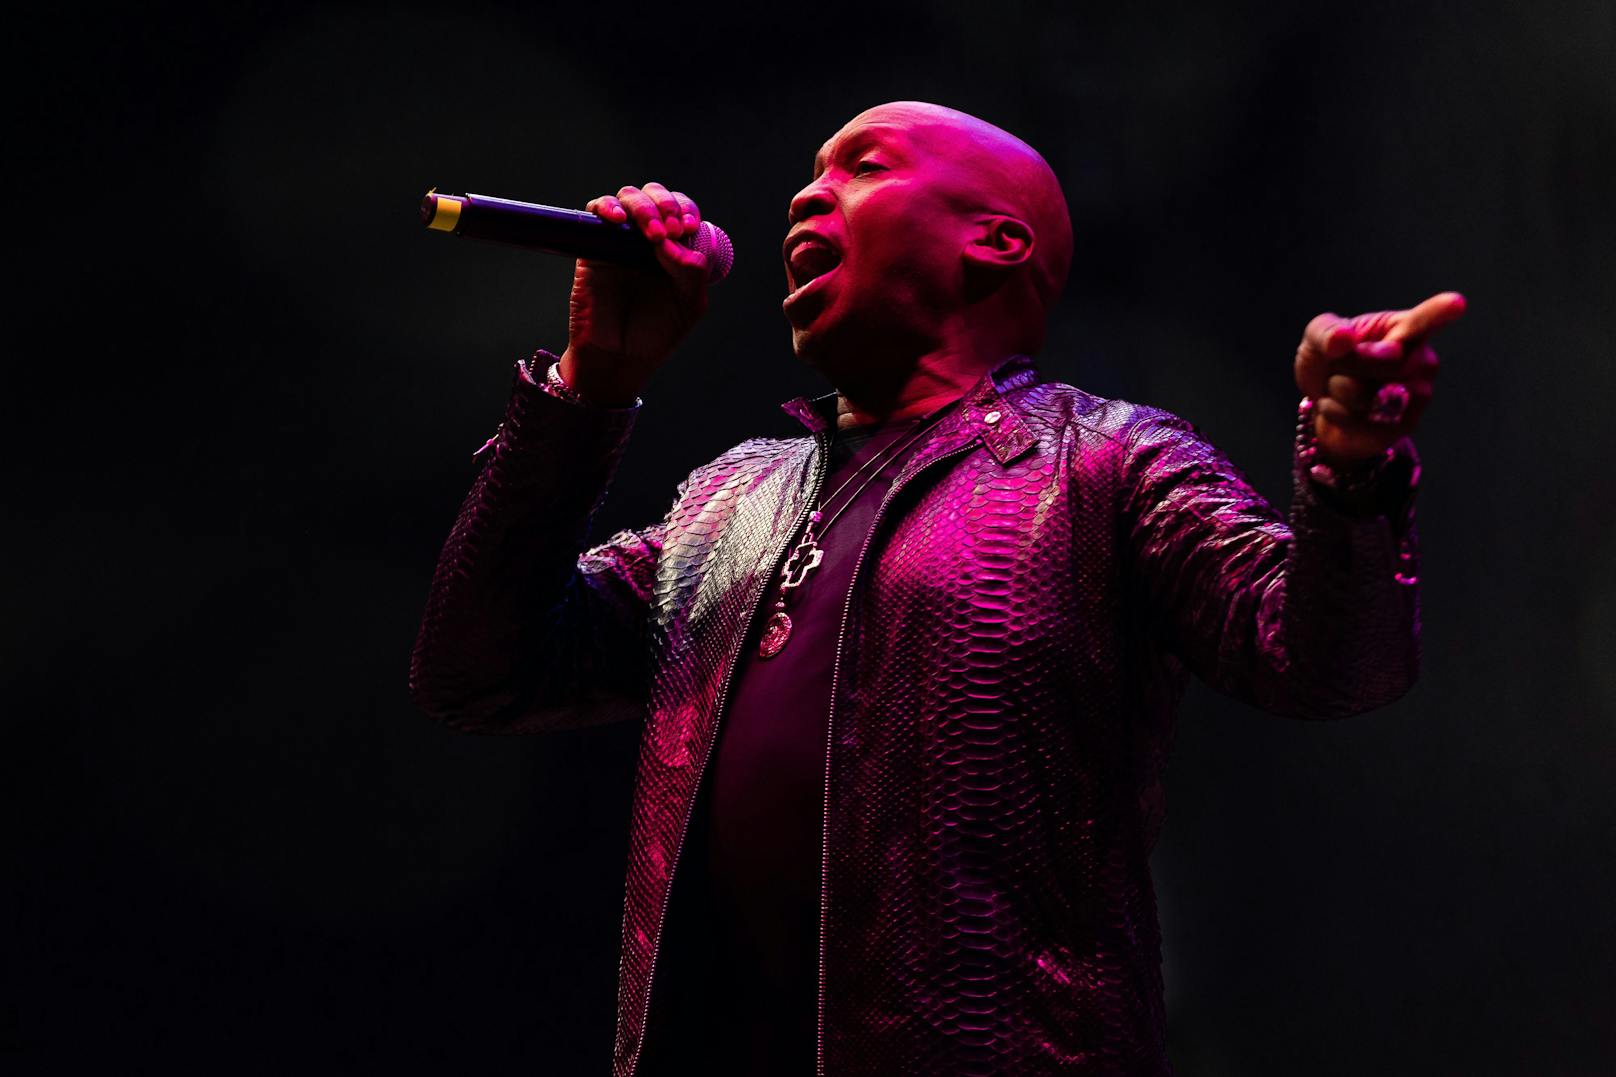 Sänger Haddaway während eines Konzertes auf der "Red Stage" im Rahmen des "Nova Rock 2022" Festivals 